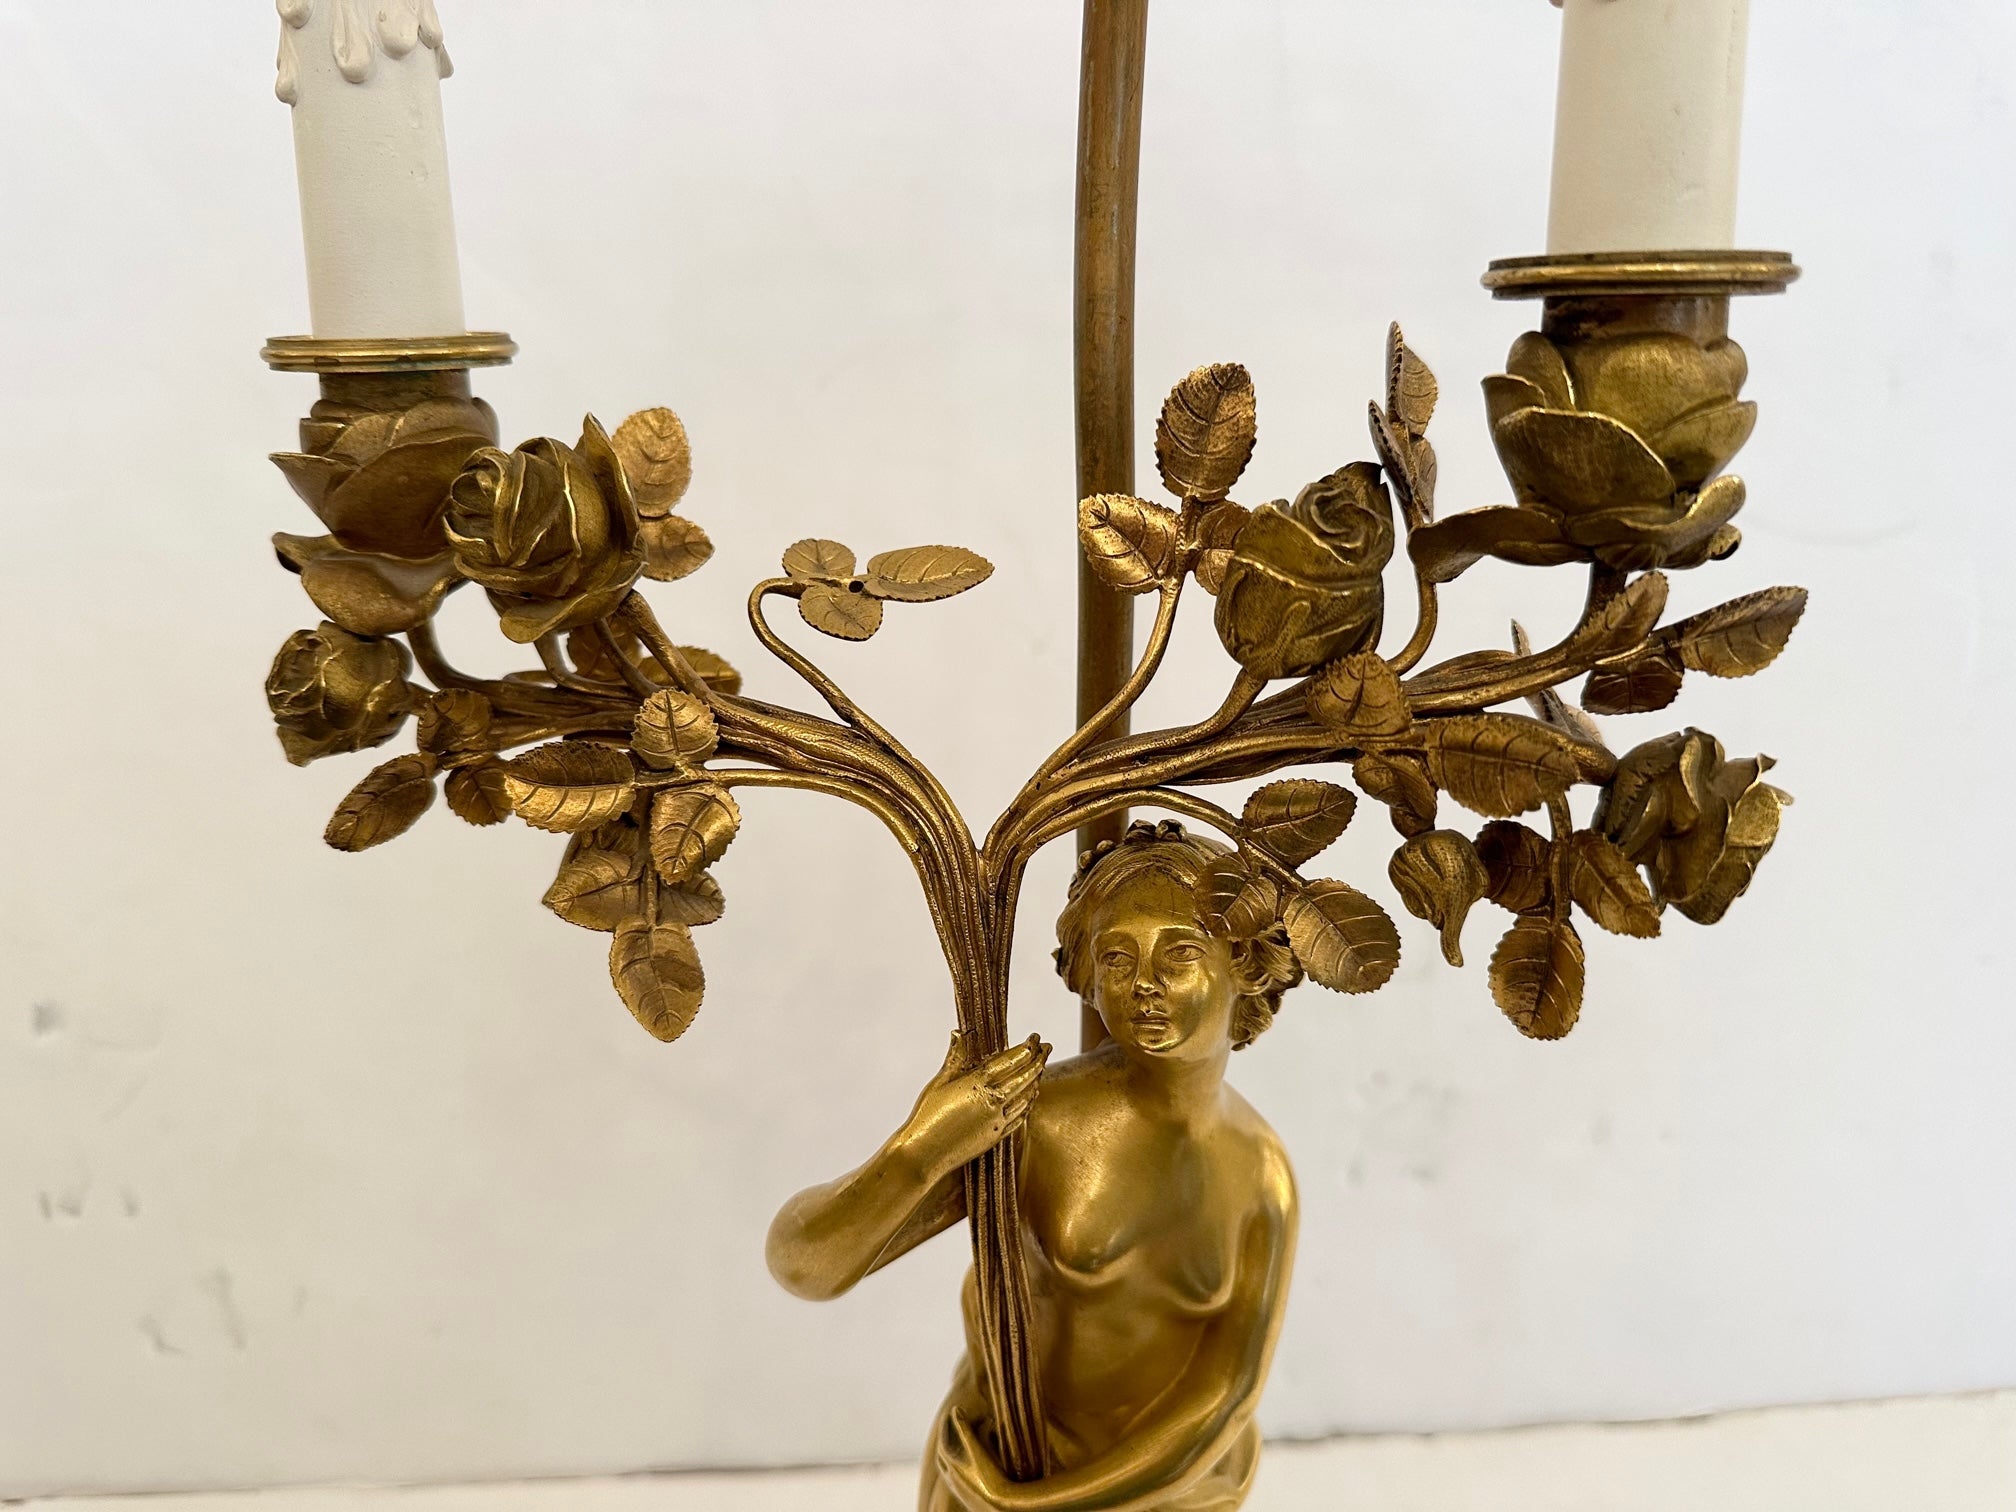 Prächtige fancy Französisch Empire vergoldeter Bronze figuralen Tischlampe mit schönen Nymphe hält zwei Zweige floralen Fackel mit Keramik-Kerzen.  Die Details wie ihr engelsgleiches Gesicht, die schönen Hände und Füße und der runde Sockel aus